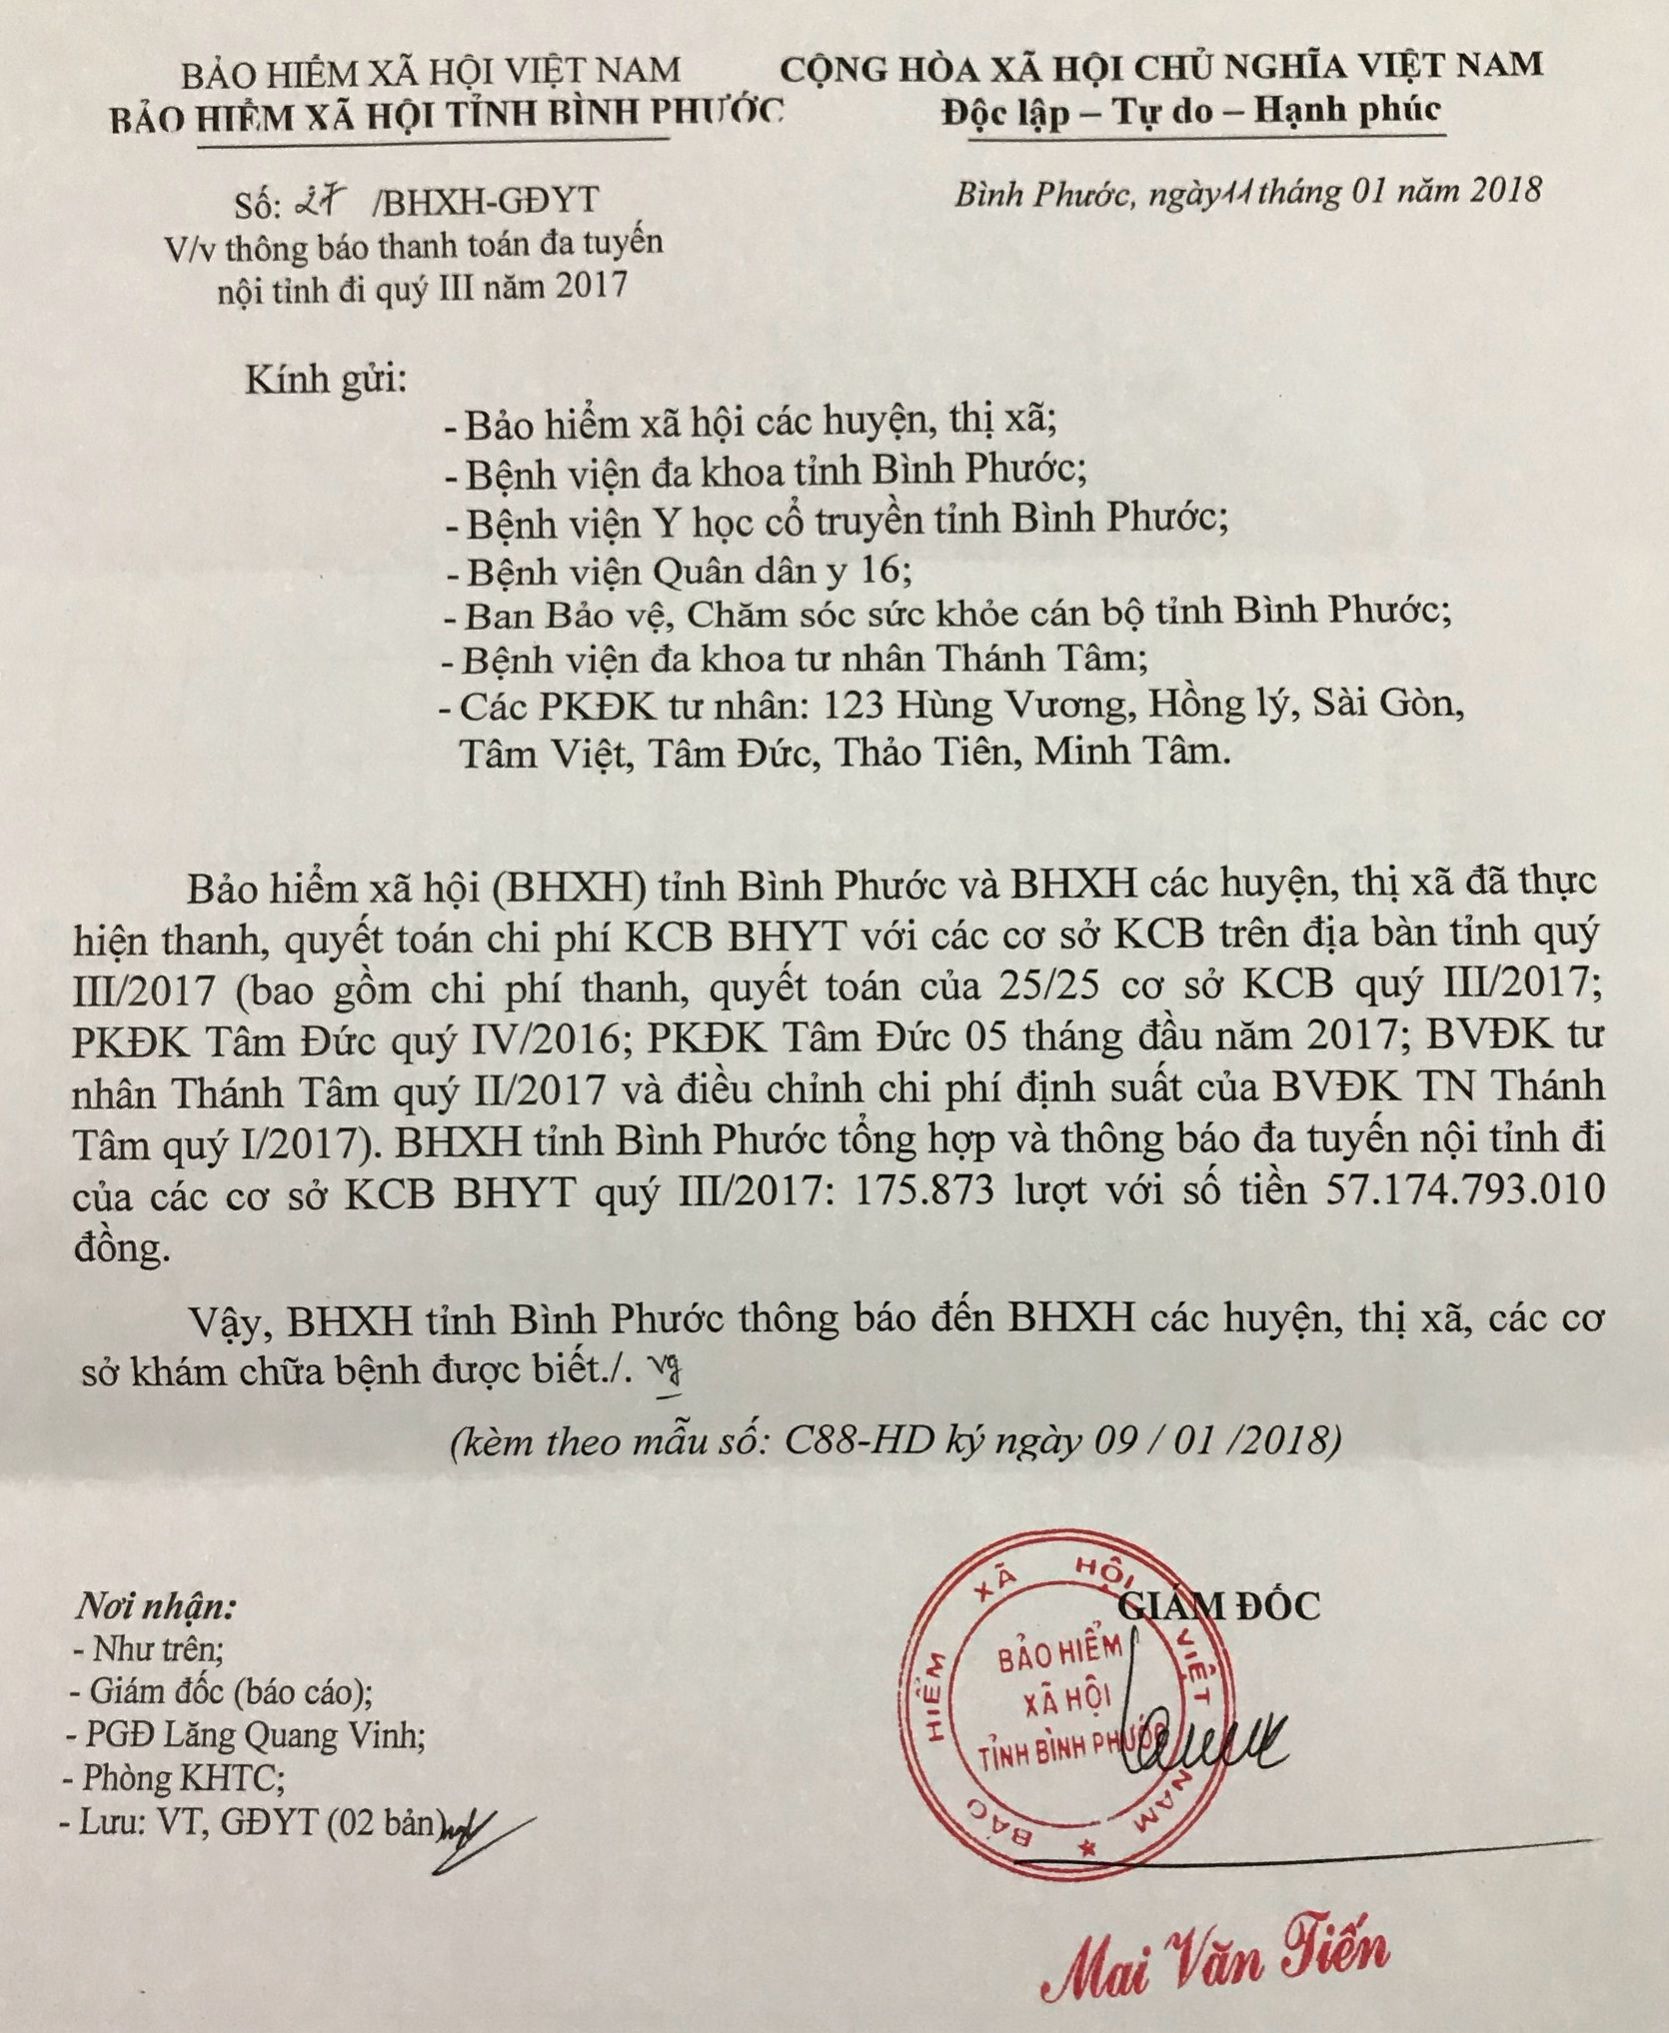 Công văn của BHXH Bình Phước khẳng định đã thanh toán hết tiền cho phòng khám Tâm Đức